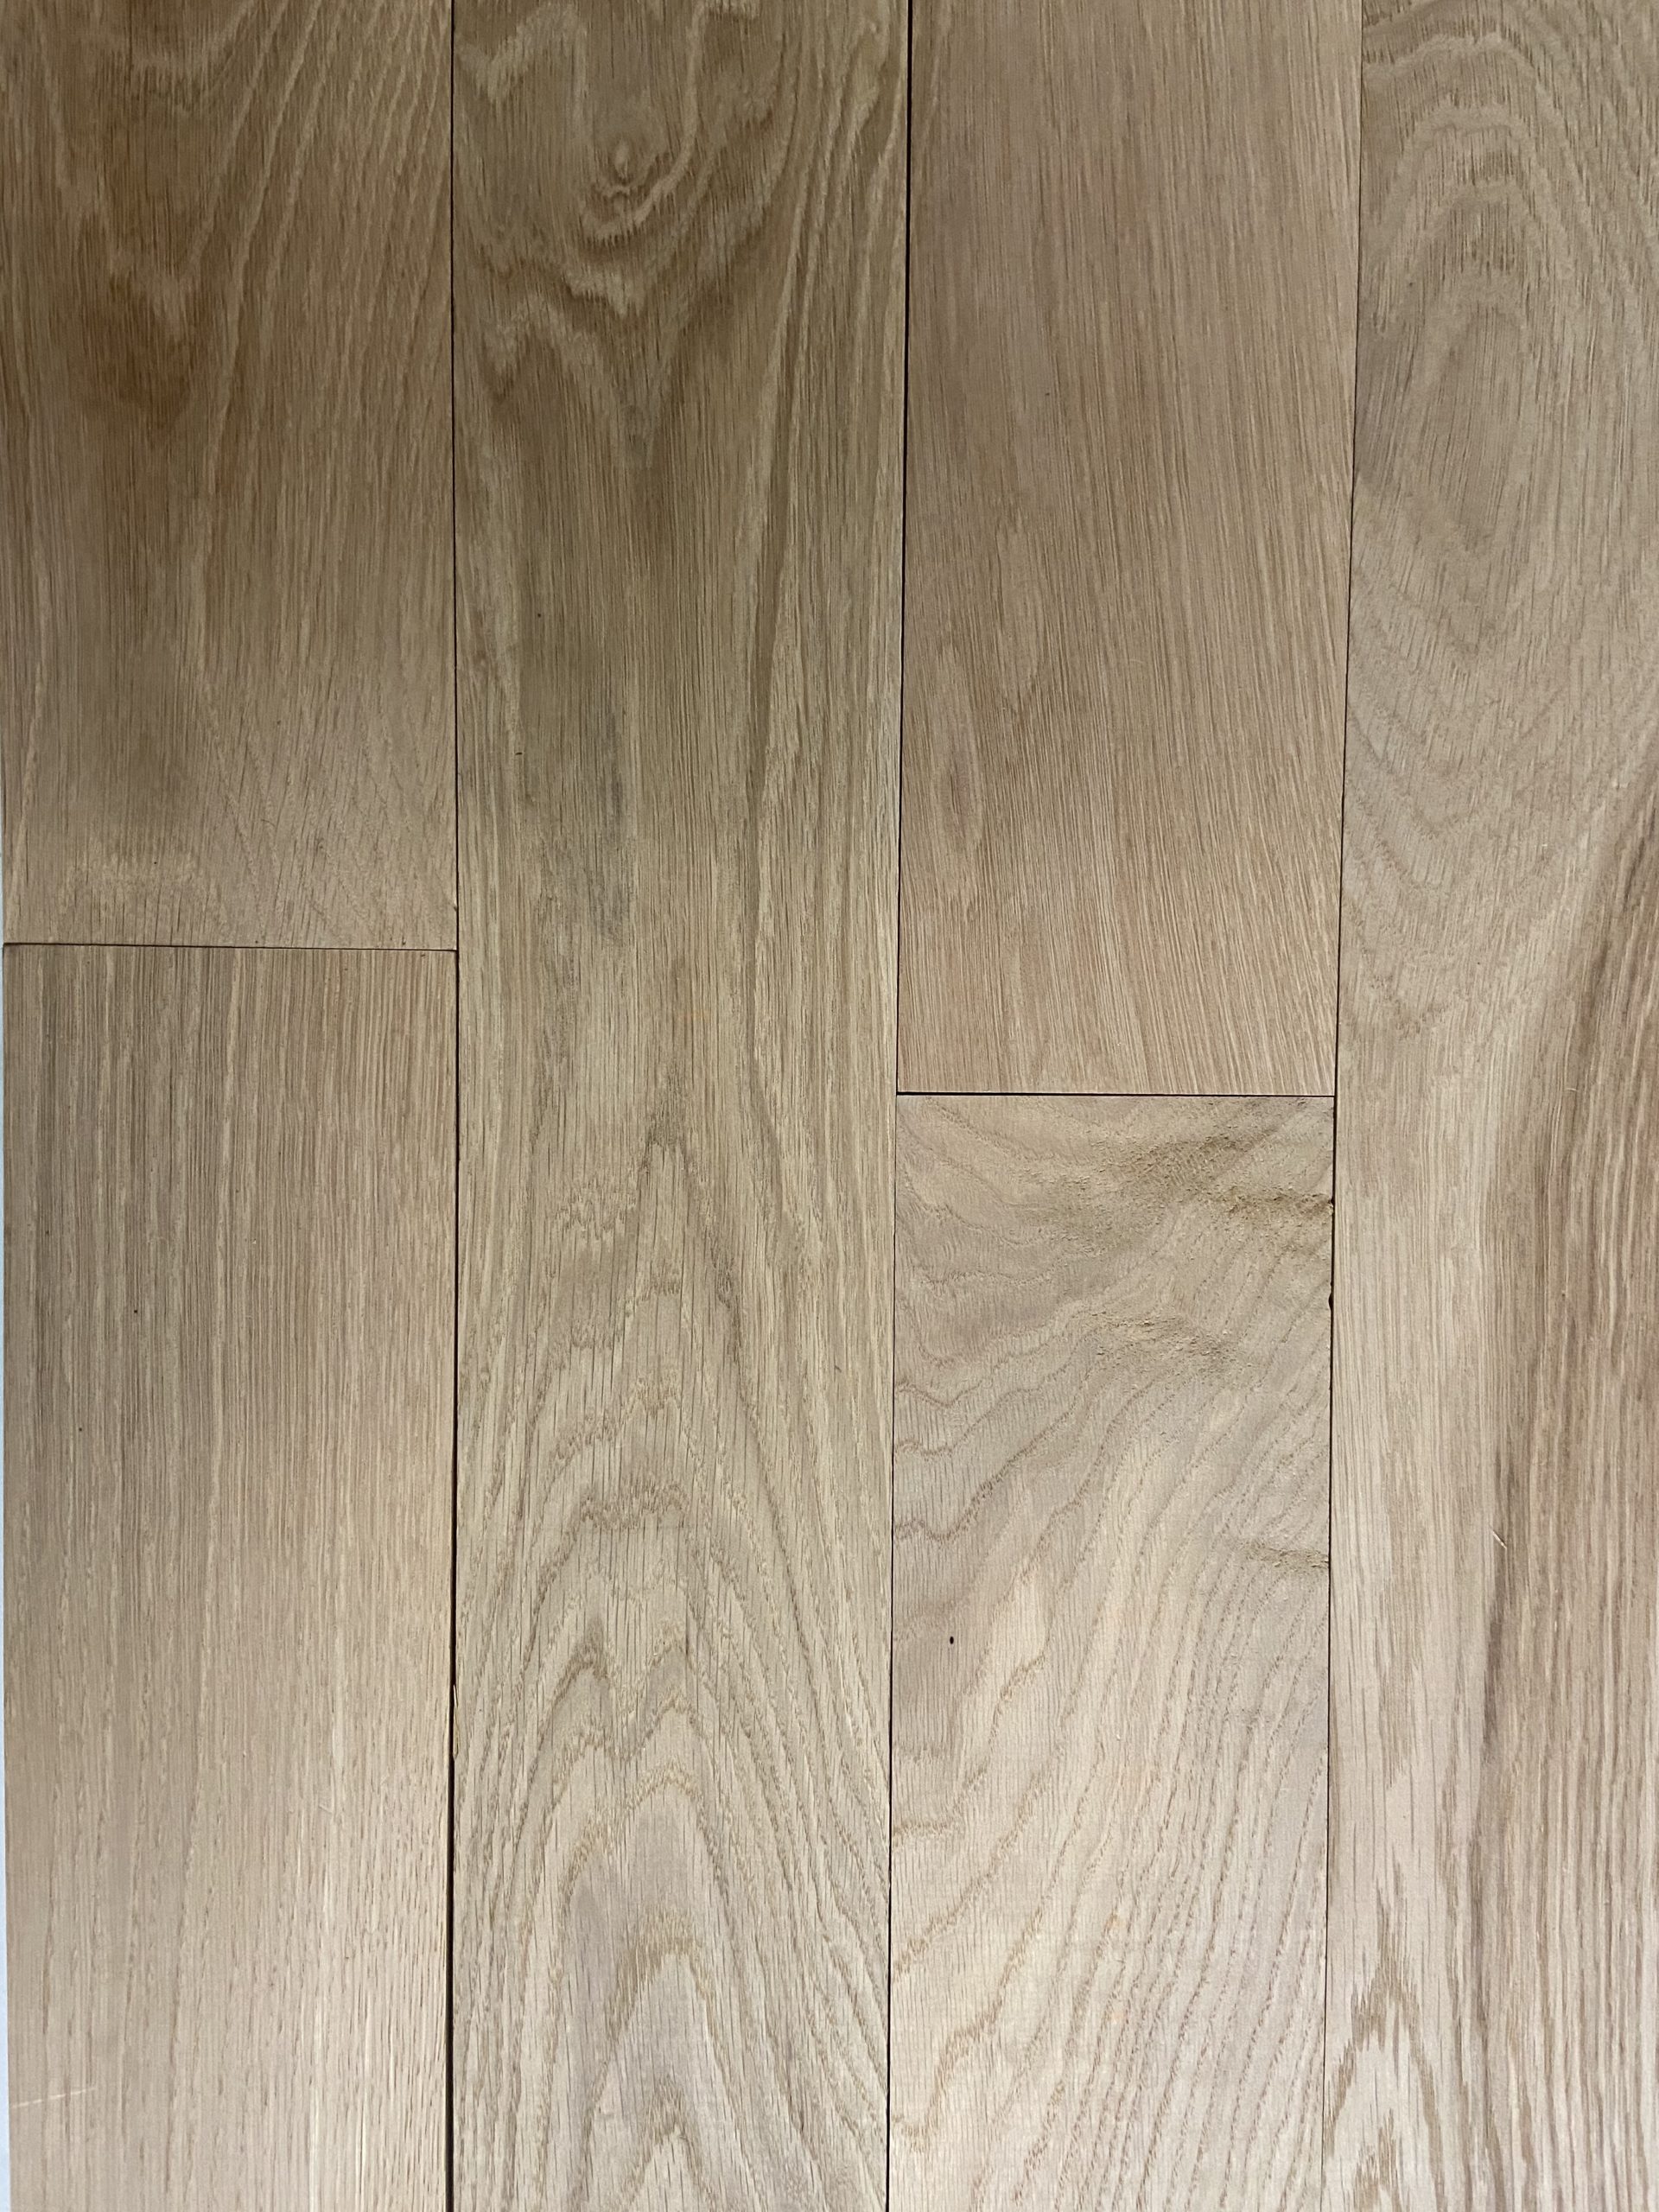 Unfinished White Oak Hardwood Flooring | Solid 3/4" & Premium